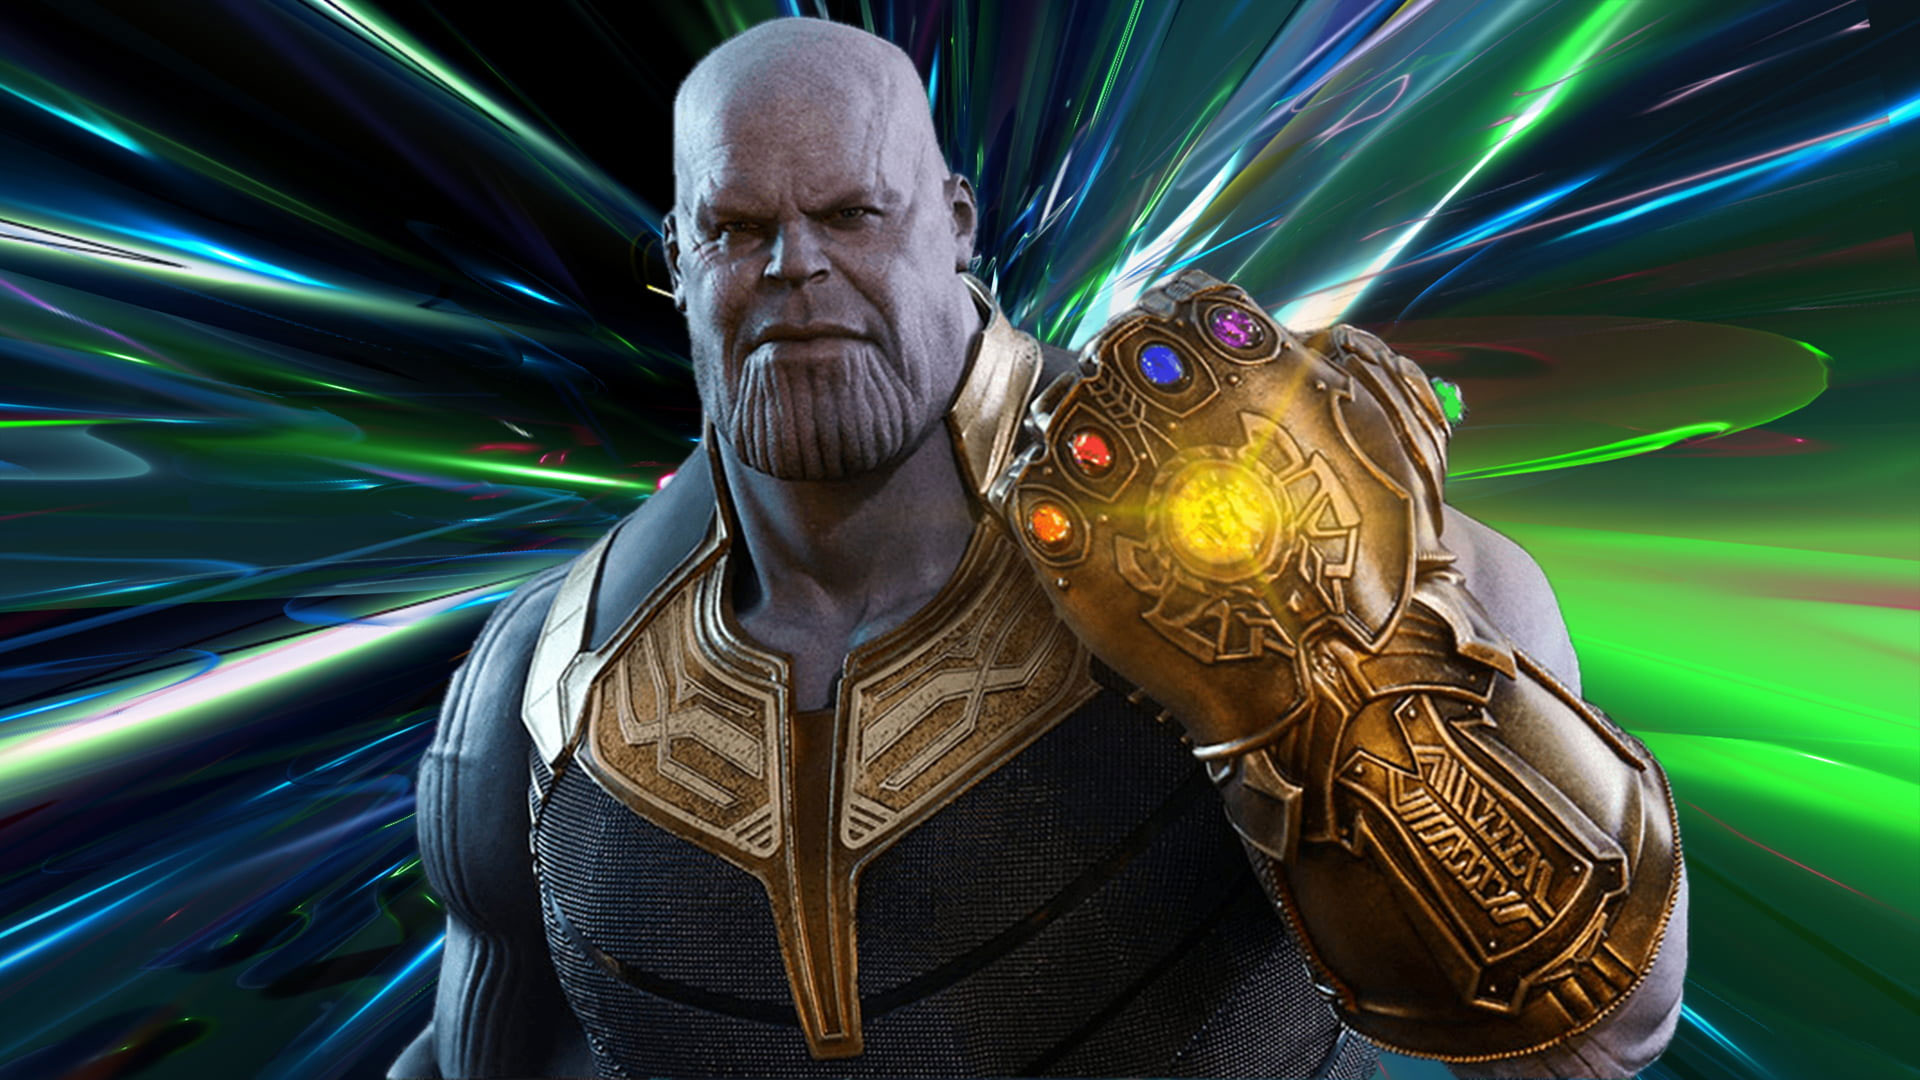 Wallpaper Thanos, Avengers Endgame, Avengers Infinity War - Wallpaperforu